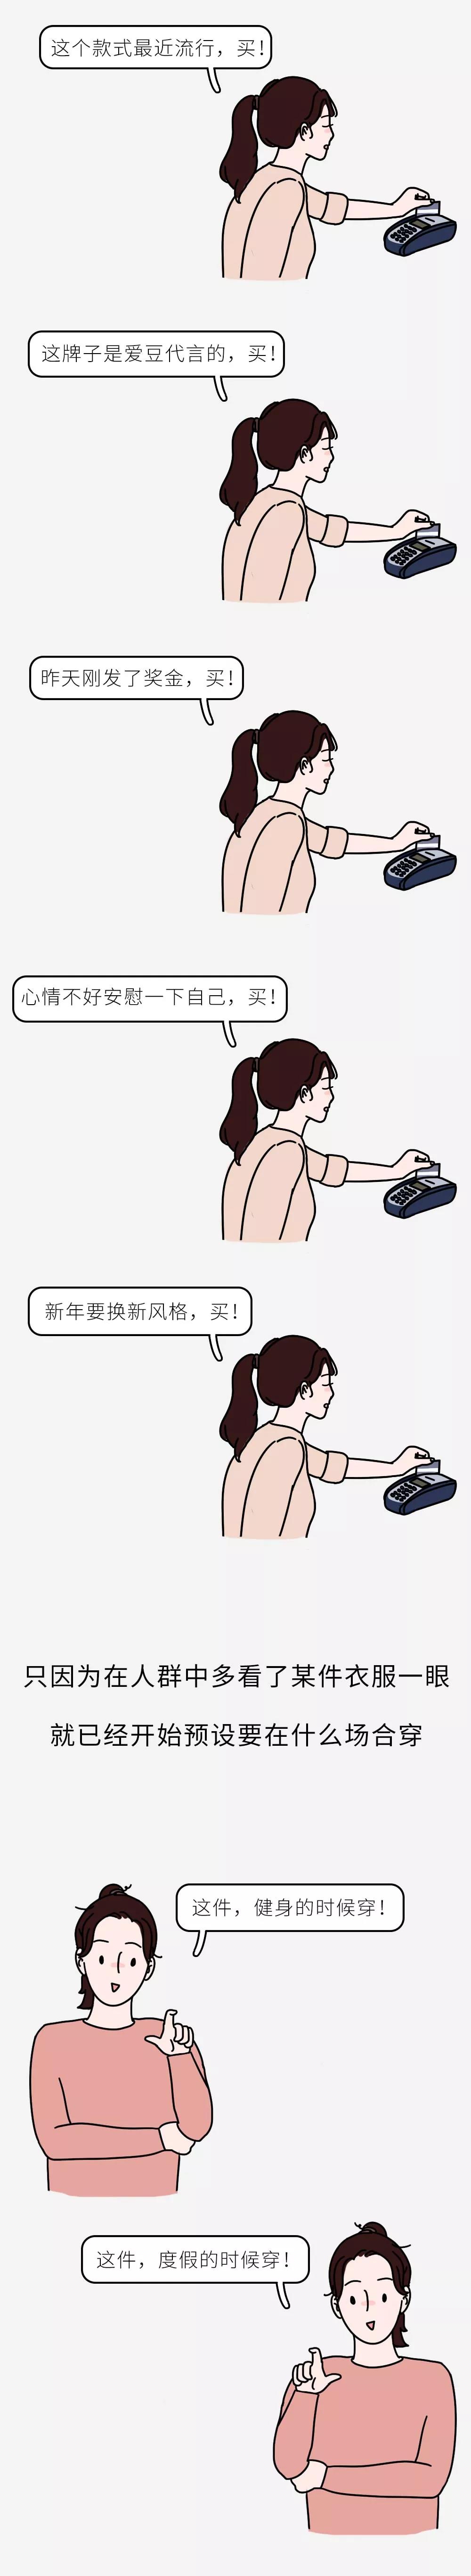 WeChat_Image_20190320105856.jpg